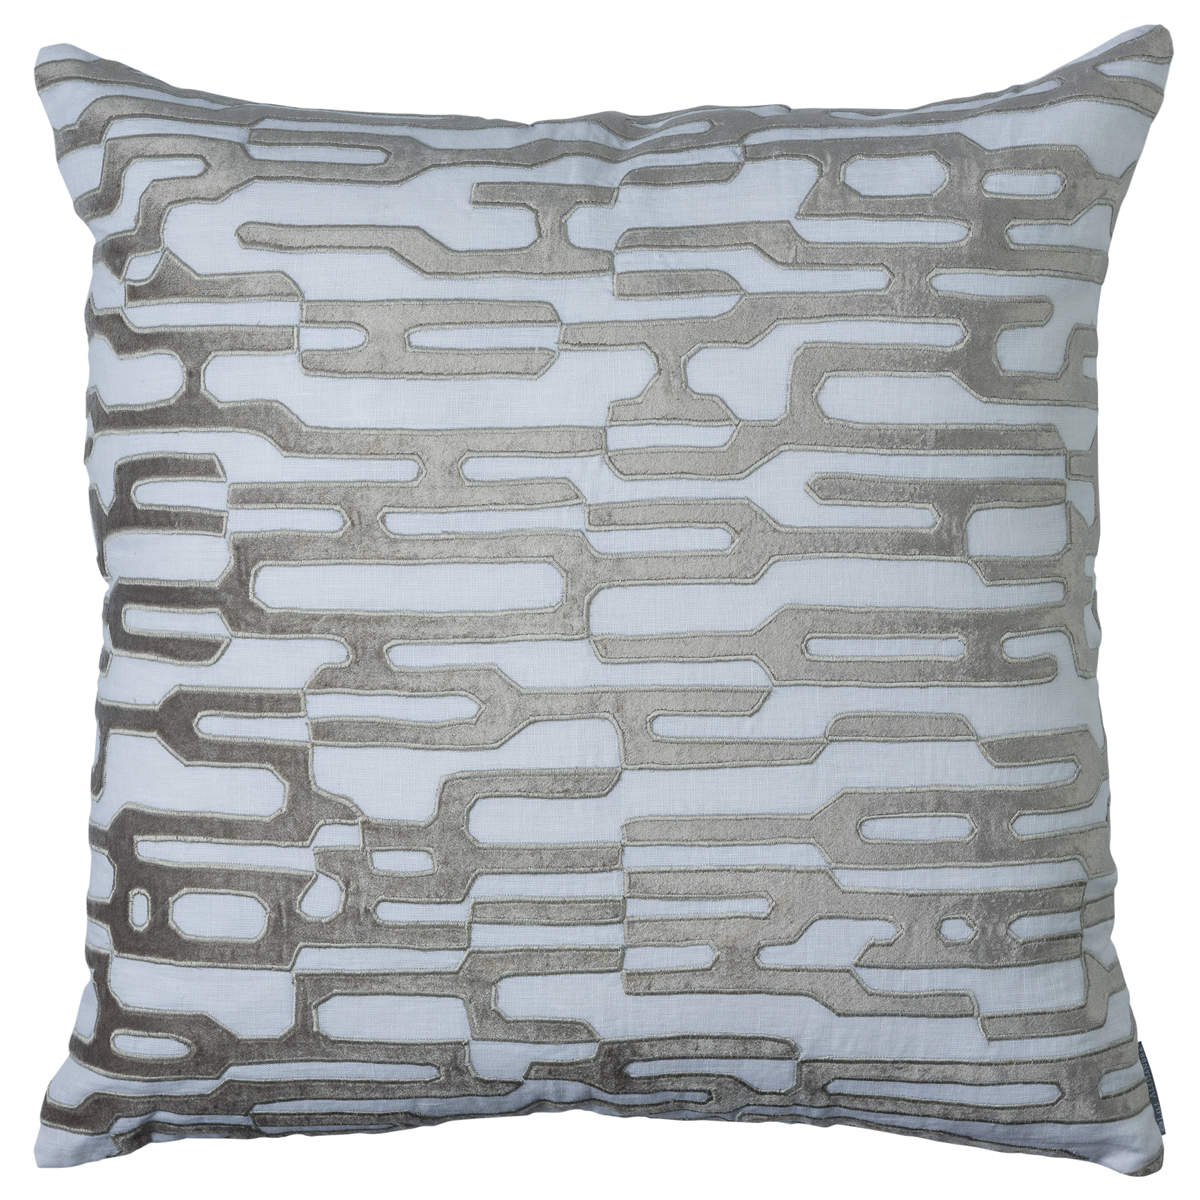 Christian Small Lumbar Pillow, Platinum with Silver Beads